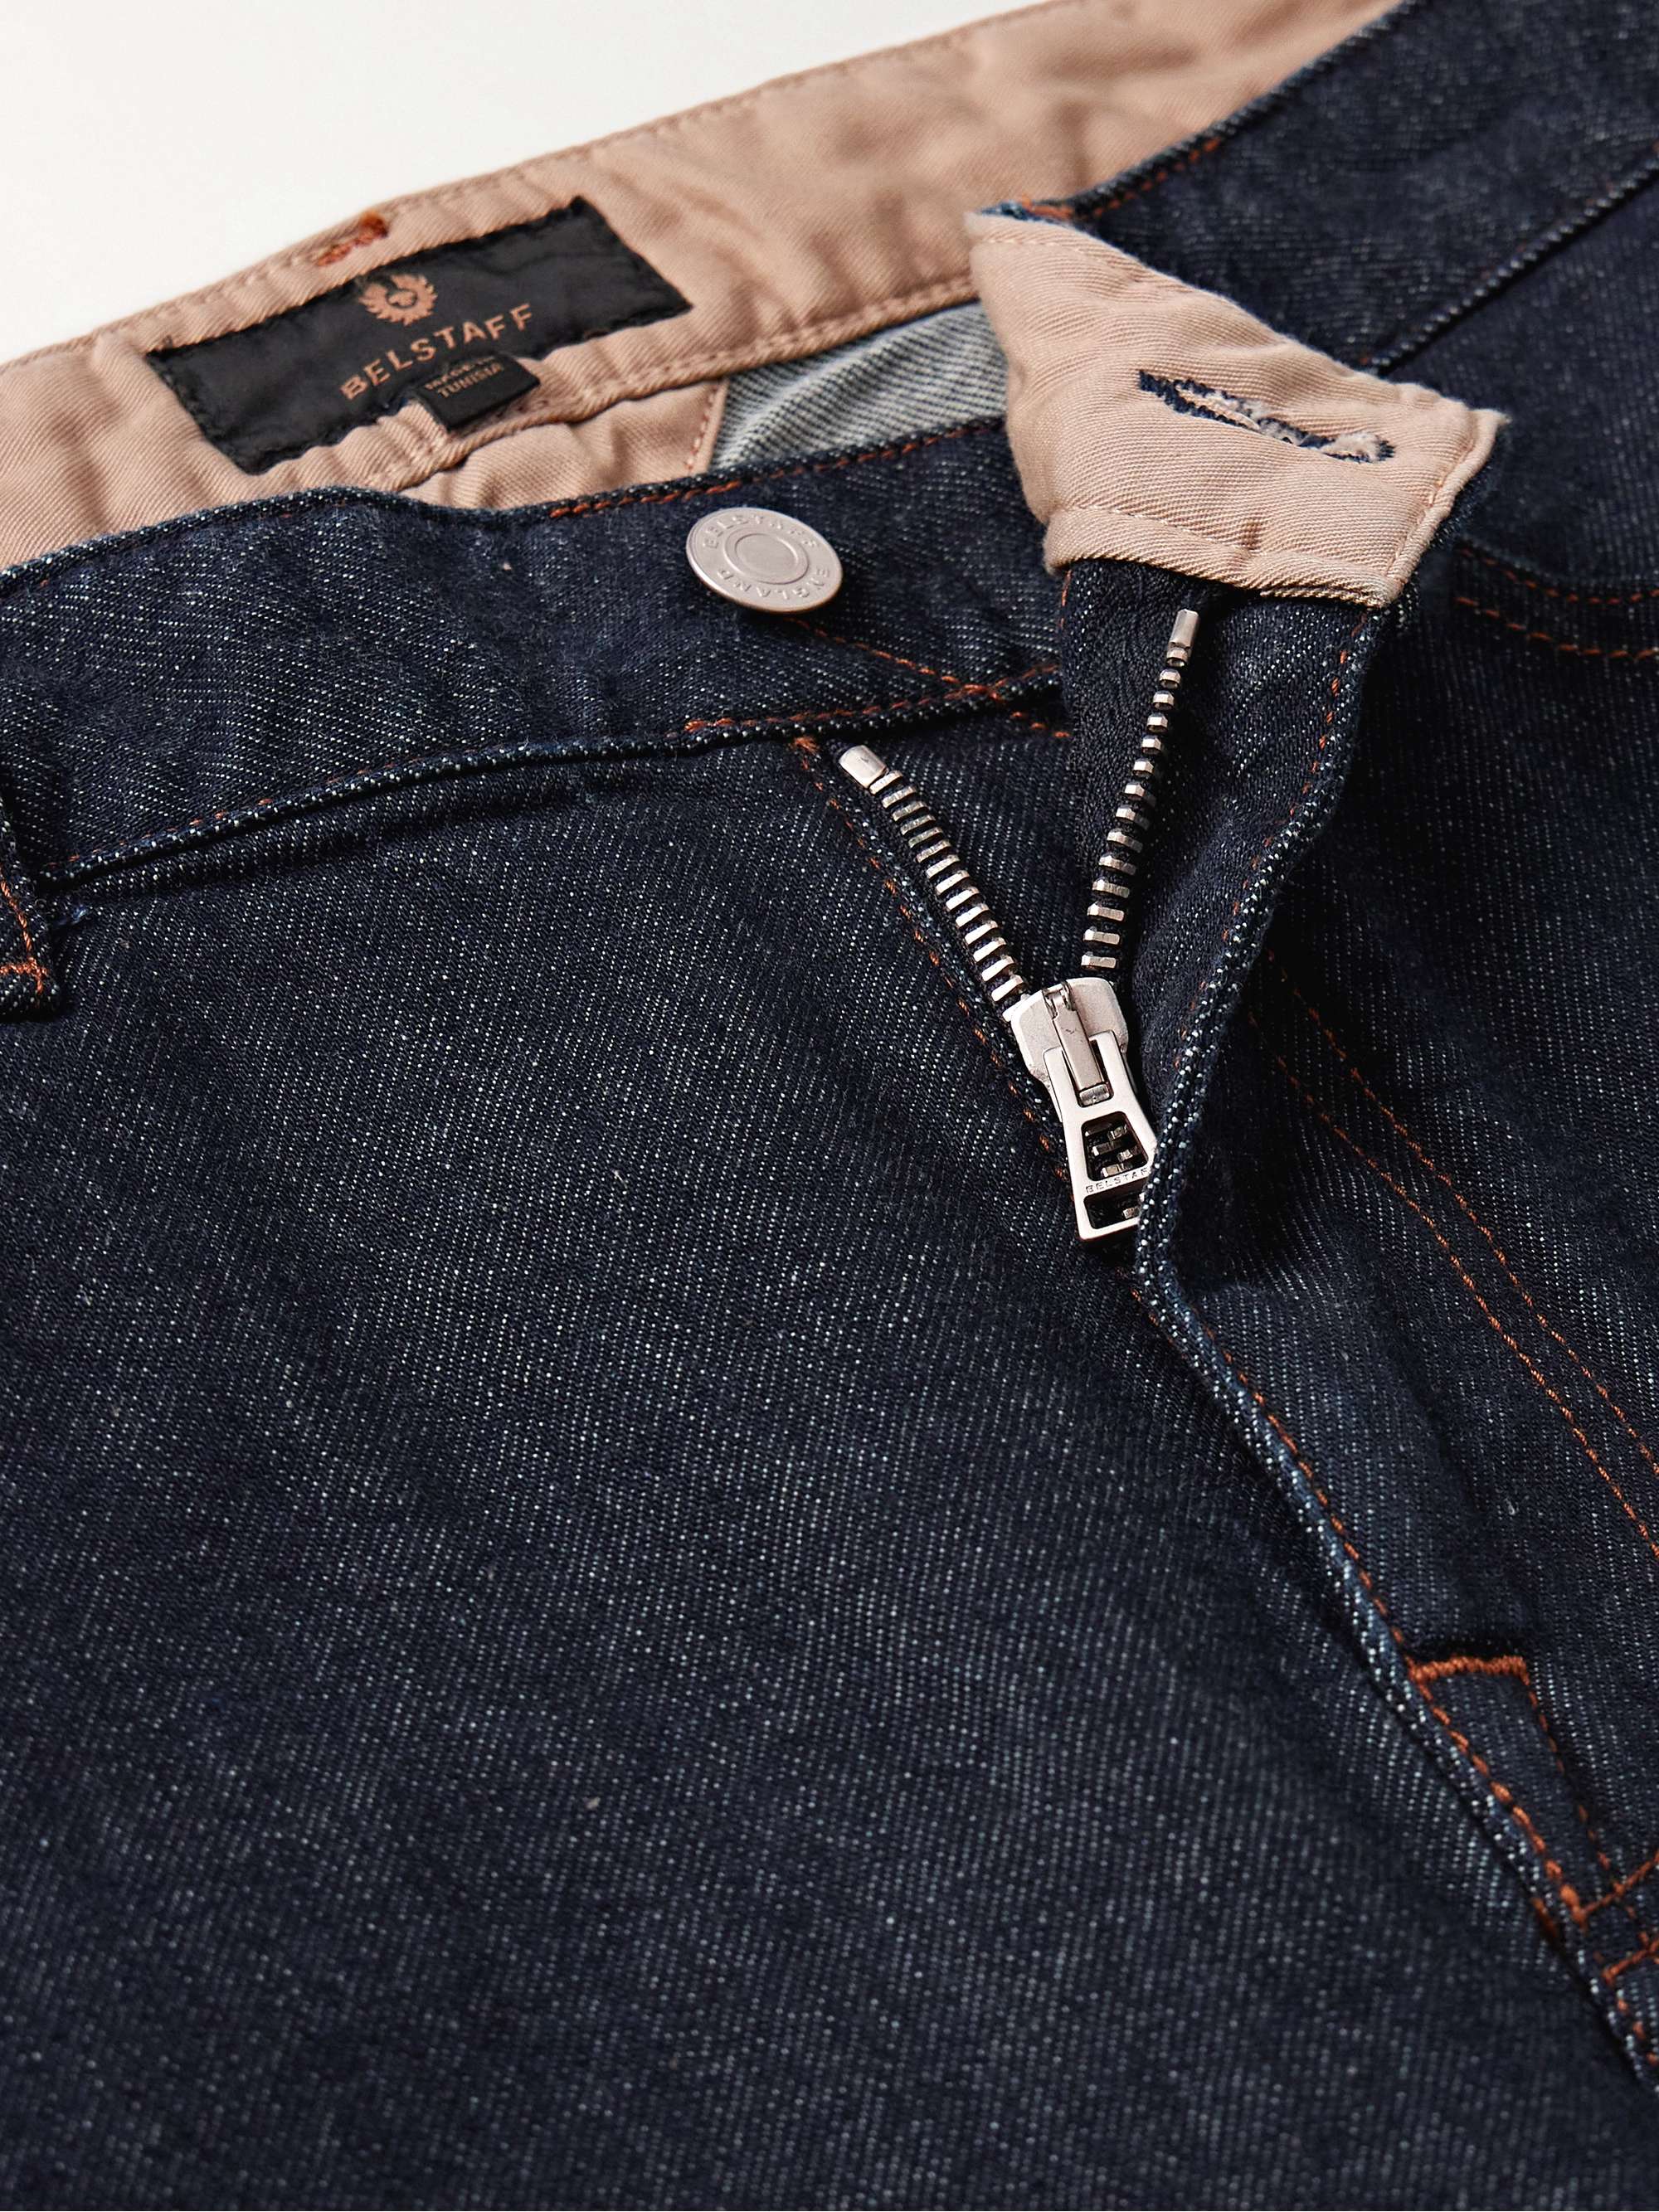 BELSTAFF Longton Slim-Fit Jeans for Men | MR PORTER